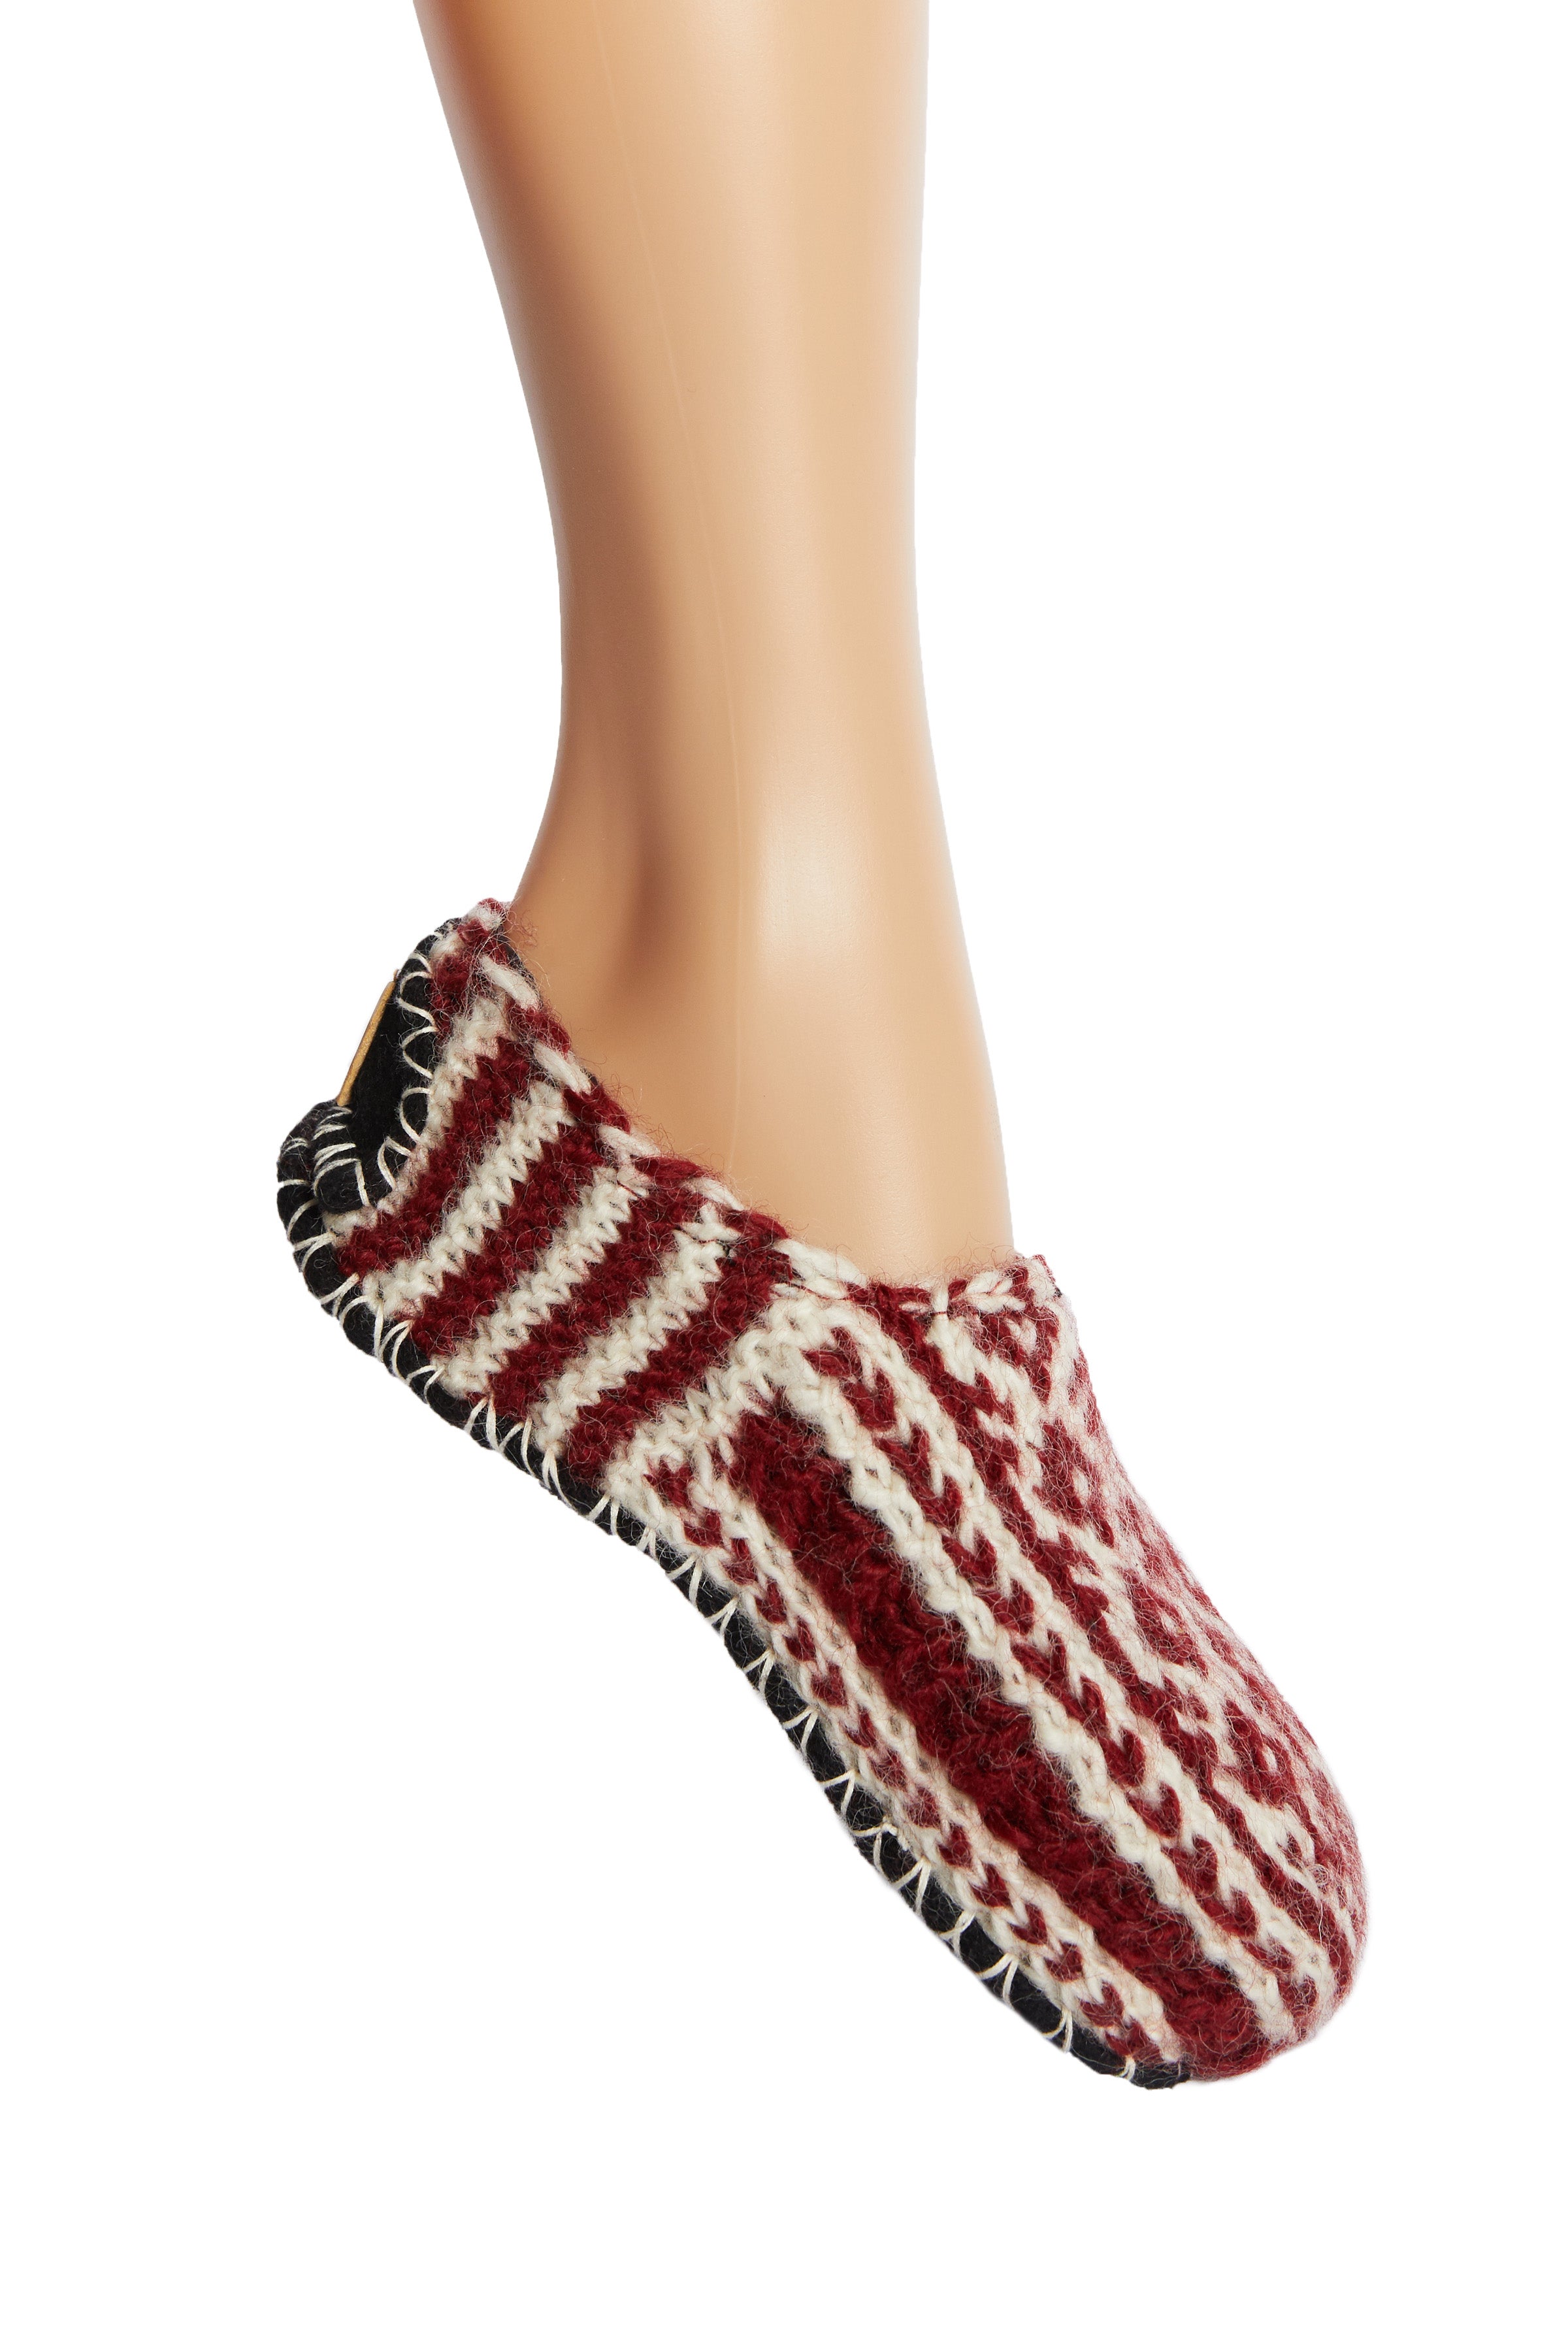 Hand Knit Wool Fleece Lined Booties Slipper Socks With Non Slip Sole –  Tibetan Socks Australia